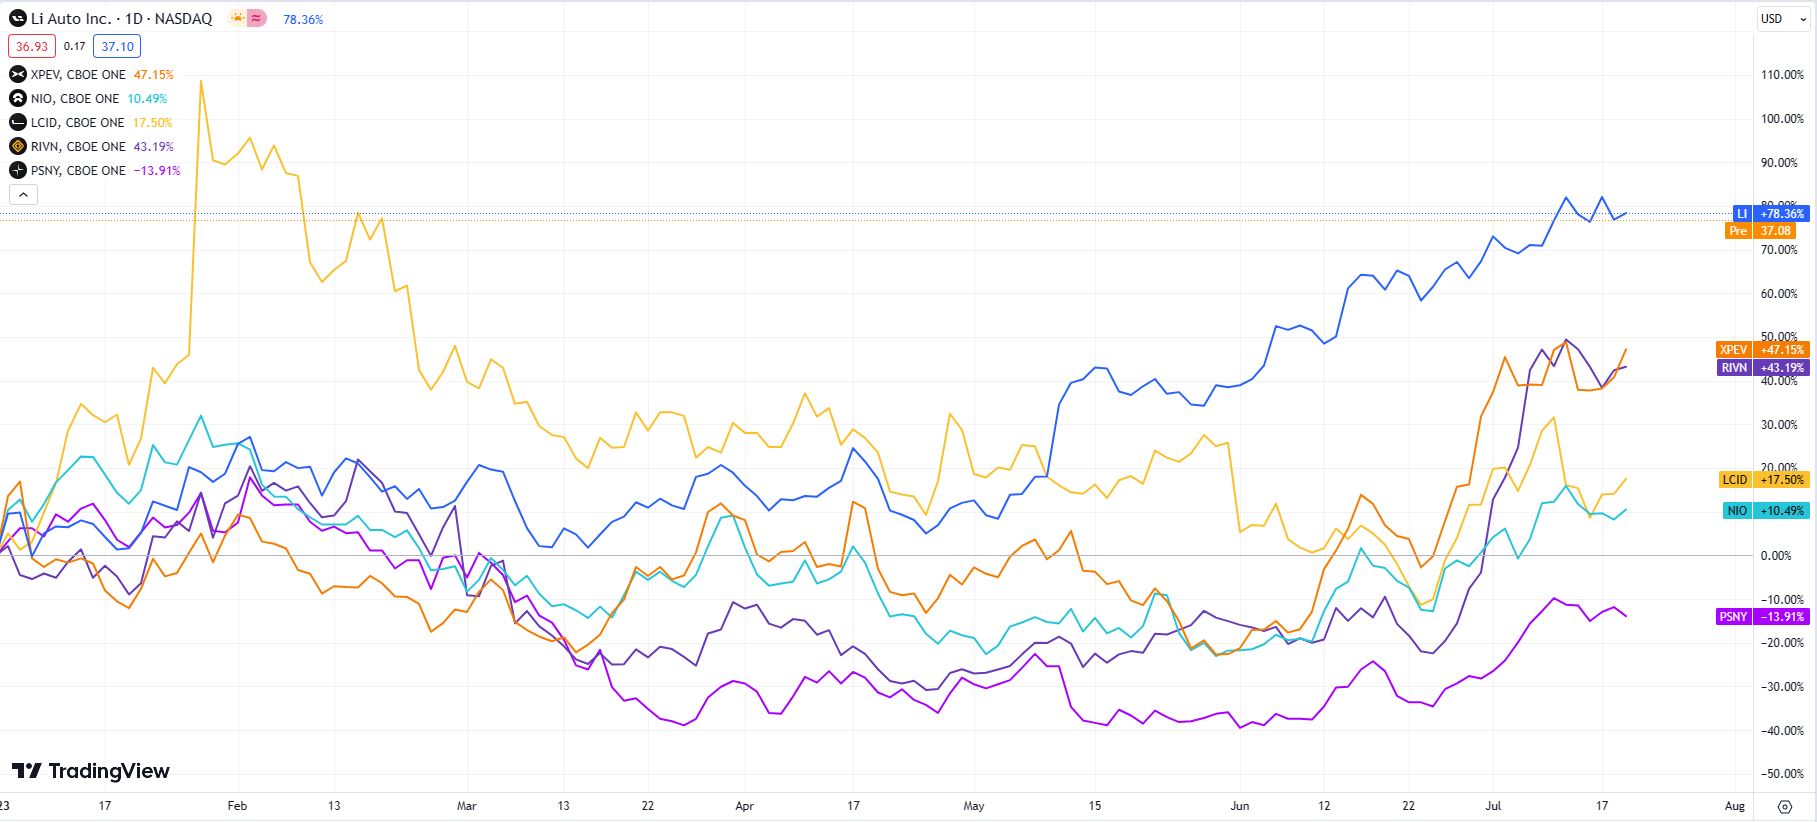 EV stocks daily chart comparison (XPEV, NIO, LCID, RIVN, PSNY)